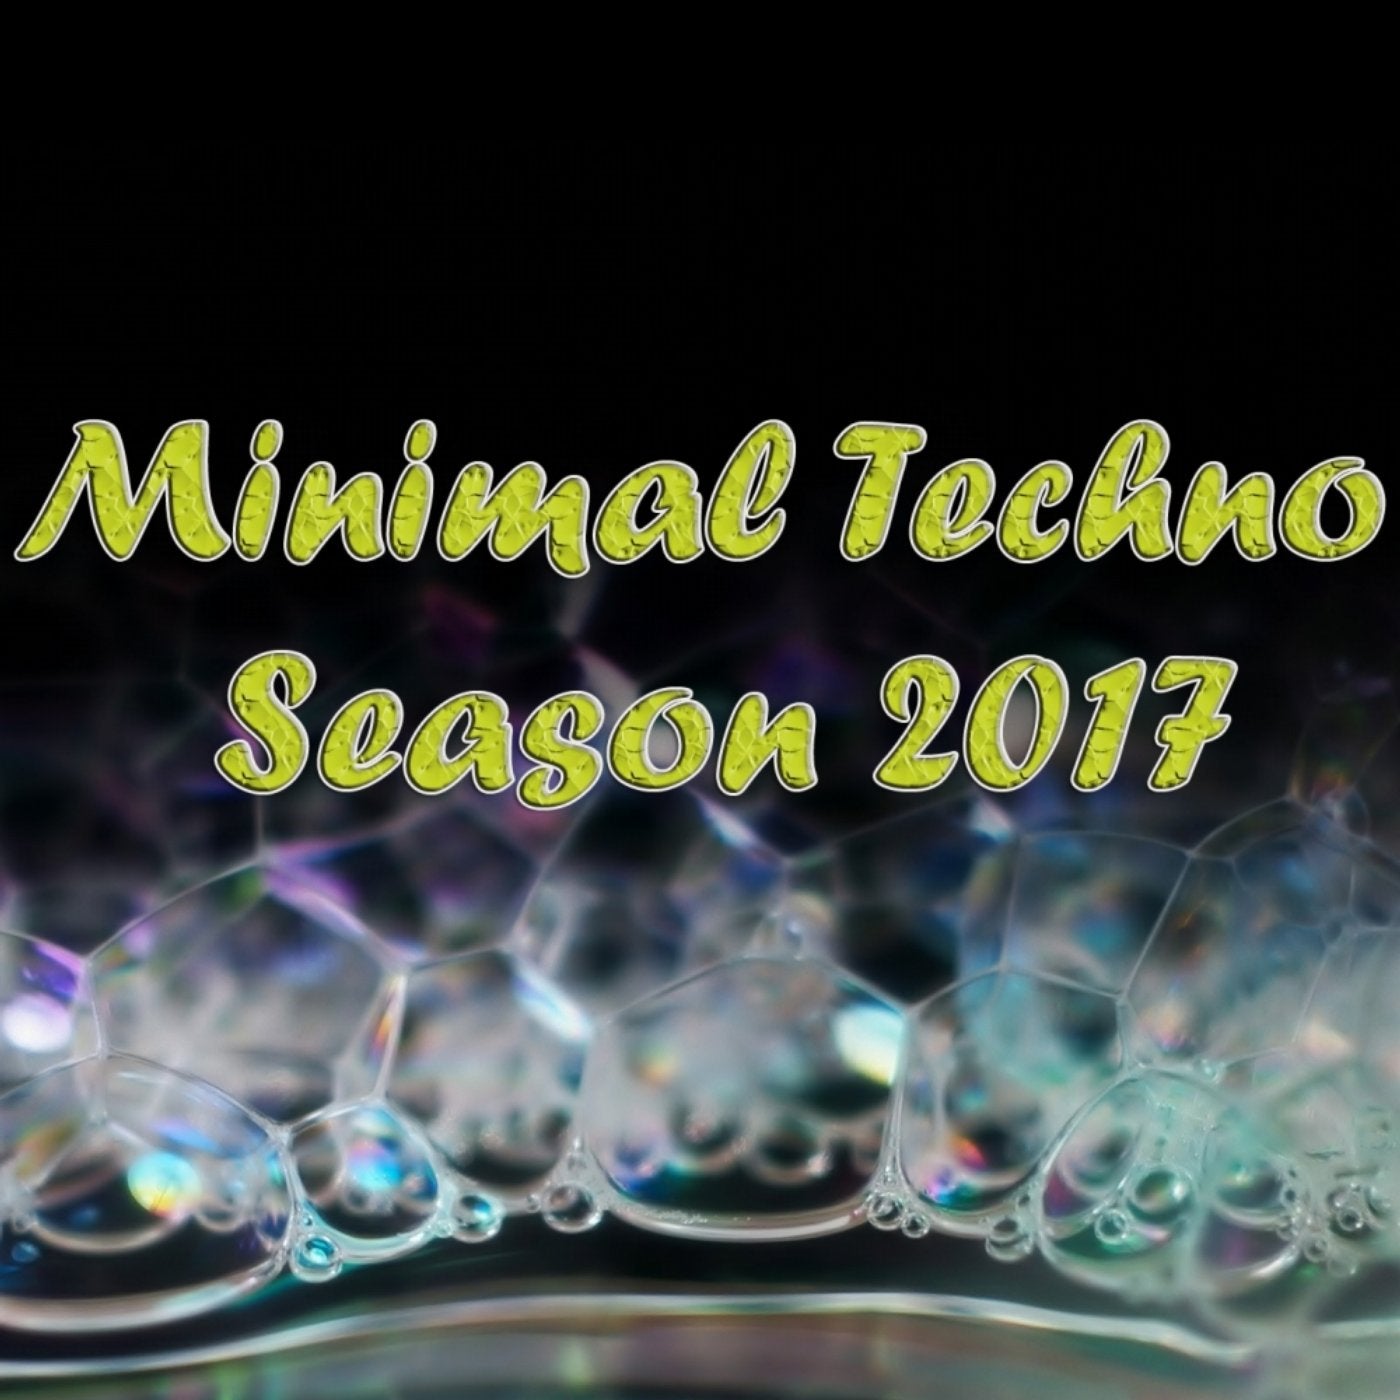 Minimal Techno Season 2017